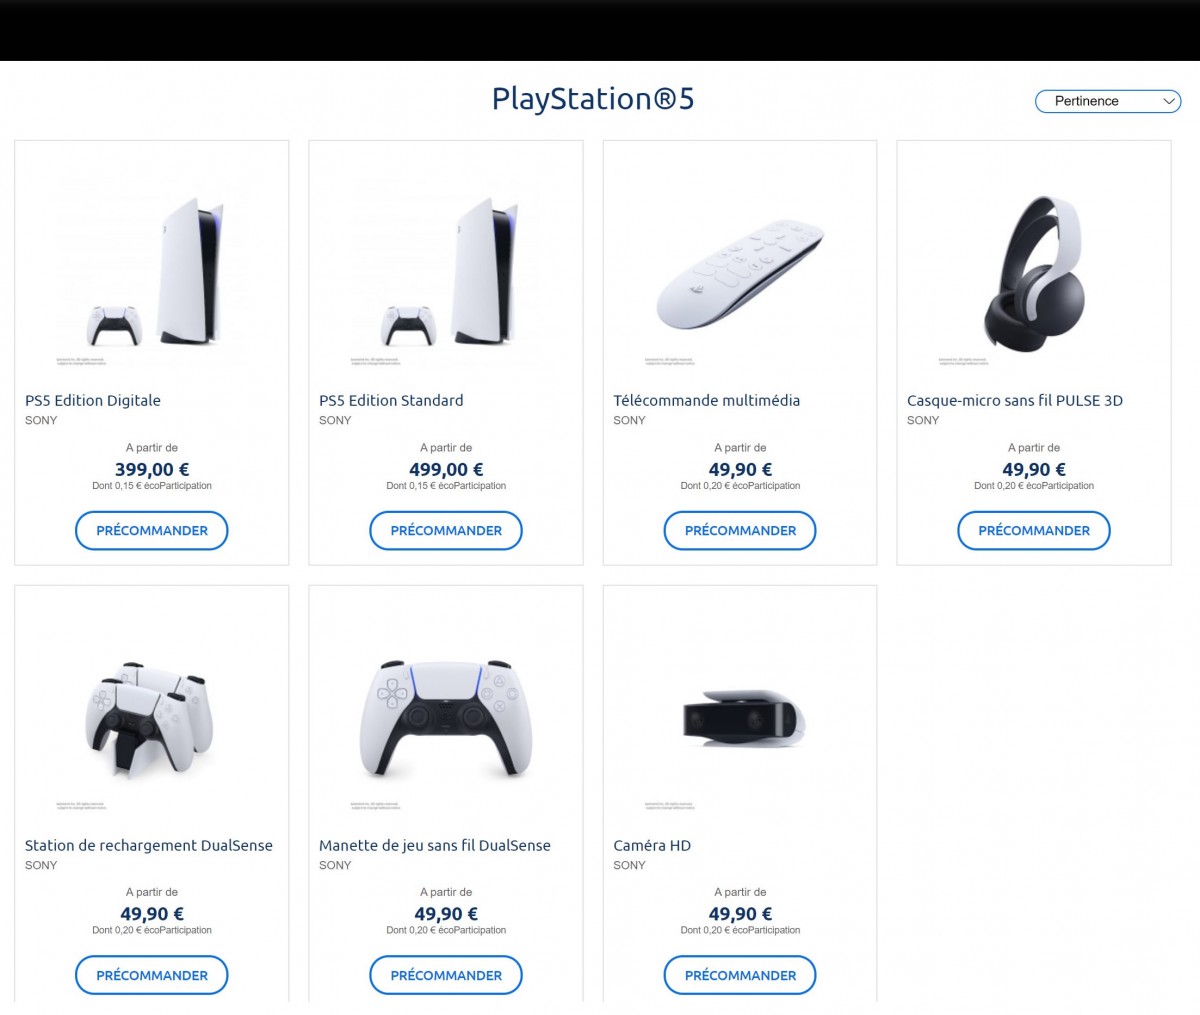 Console SONY Playstation 5 : Les prix révélés par Carrefour, à partir de 399 euros ?